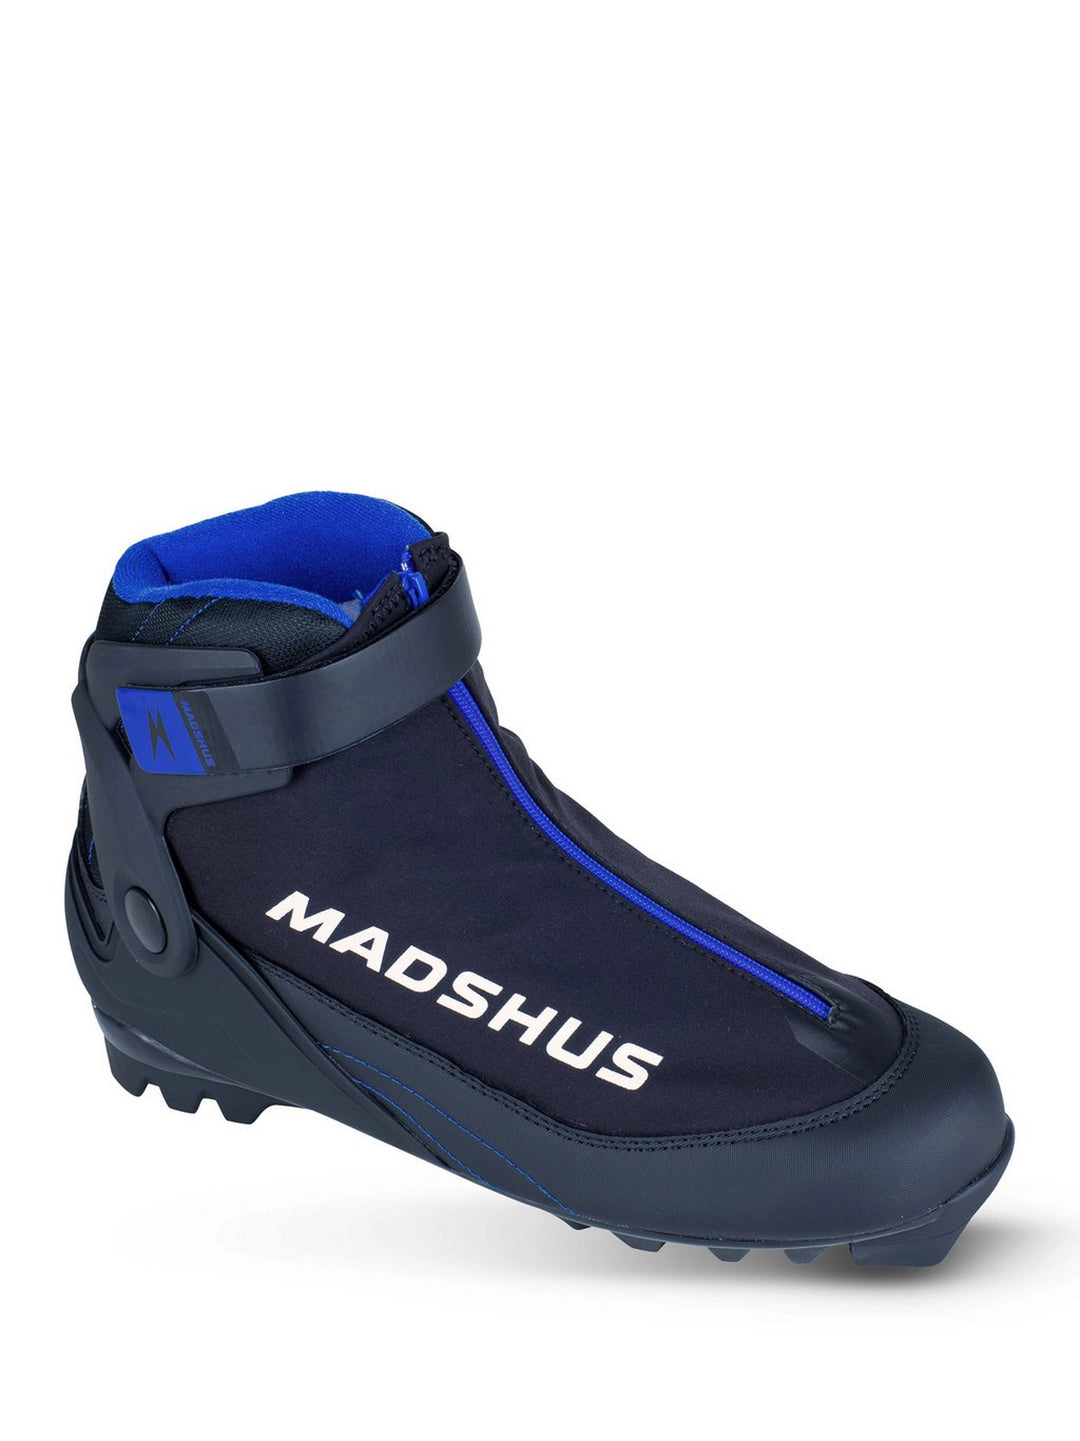 Chaussures de ski Madshus Active U pour hommes